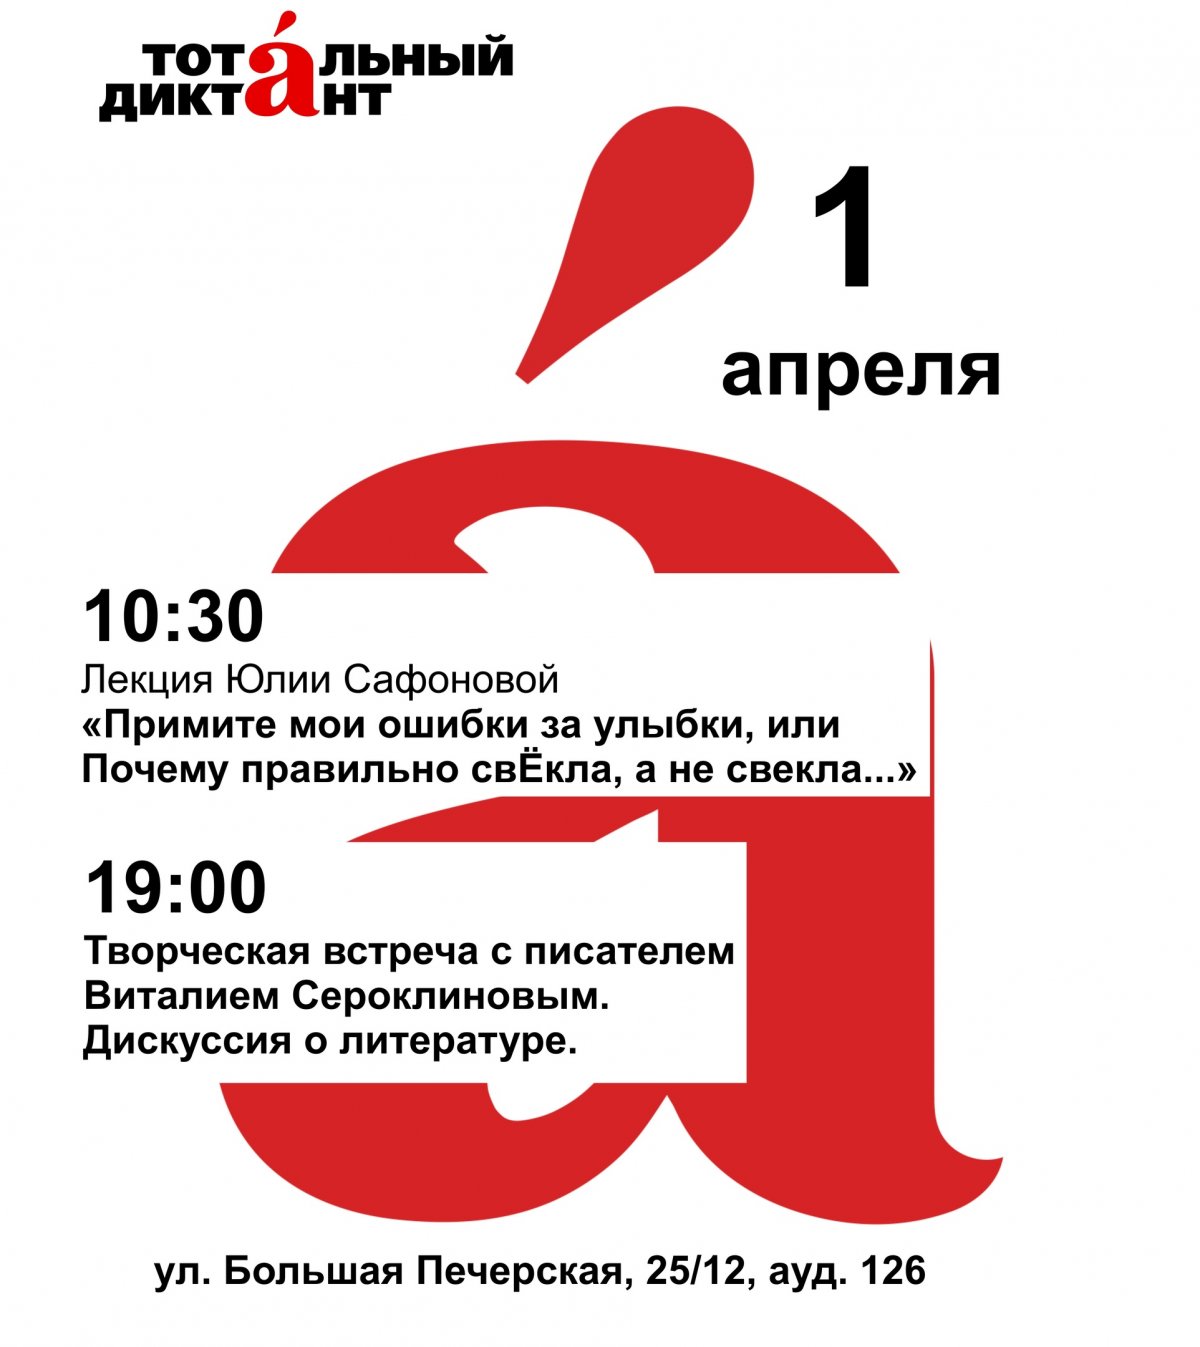 1 апреля в рамках автопробега проекта "Тотальный диктант" в нижегородской Вышке состоятся целых два мероприятия, приуроченных к этому событию!